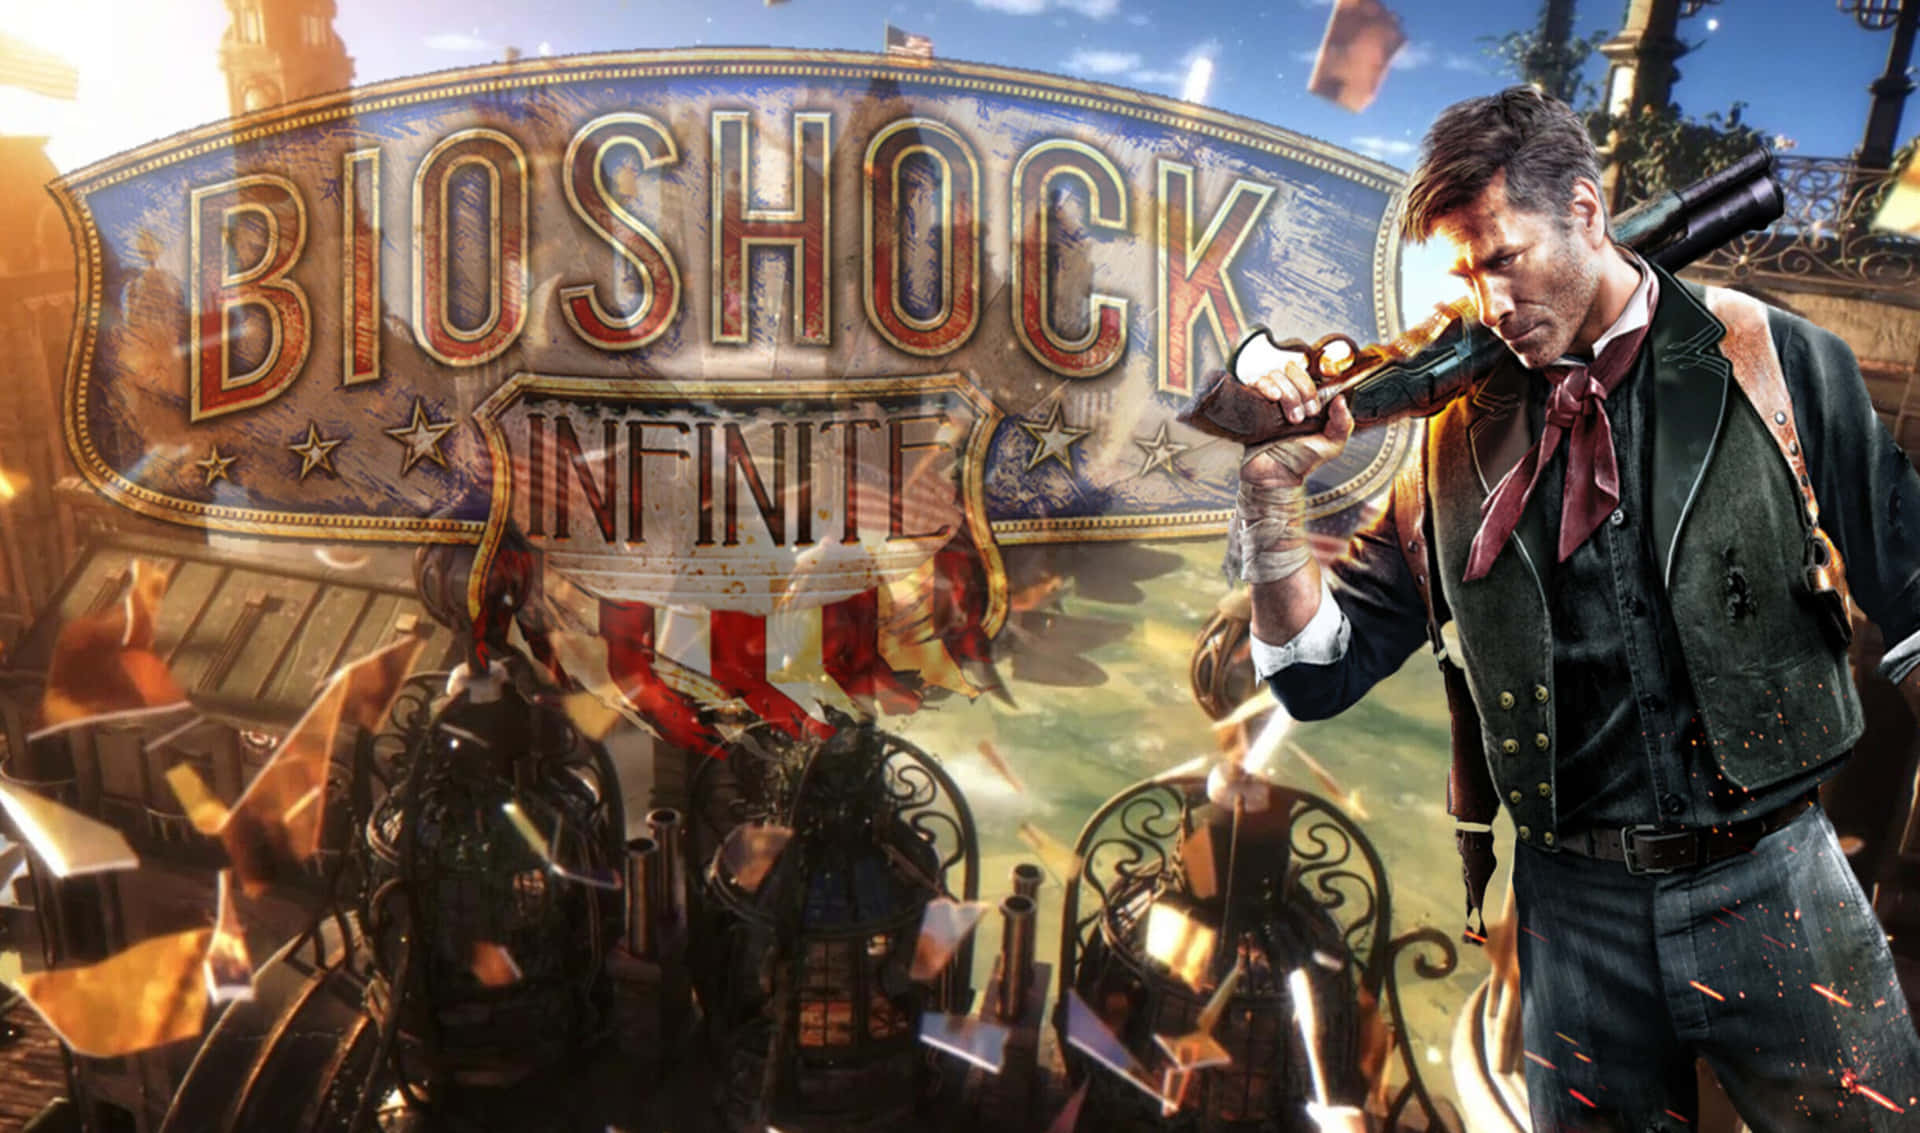 2440x1440 Booker Dewitt Bioshock Infinite Background Poster Background